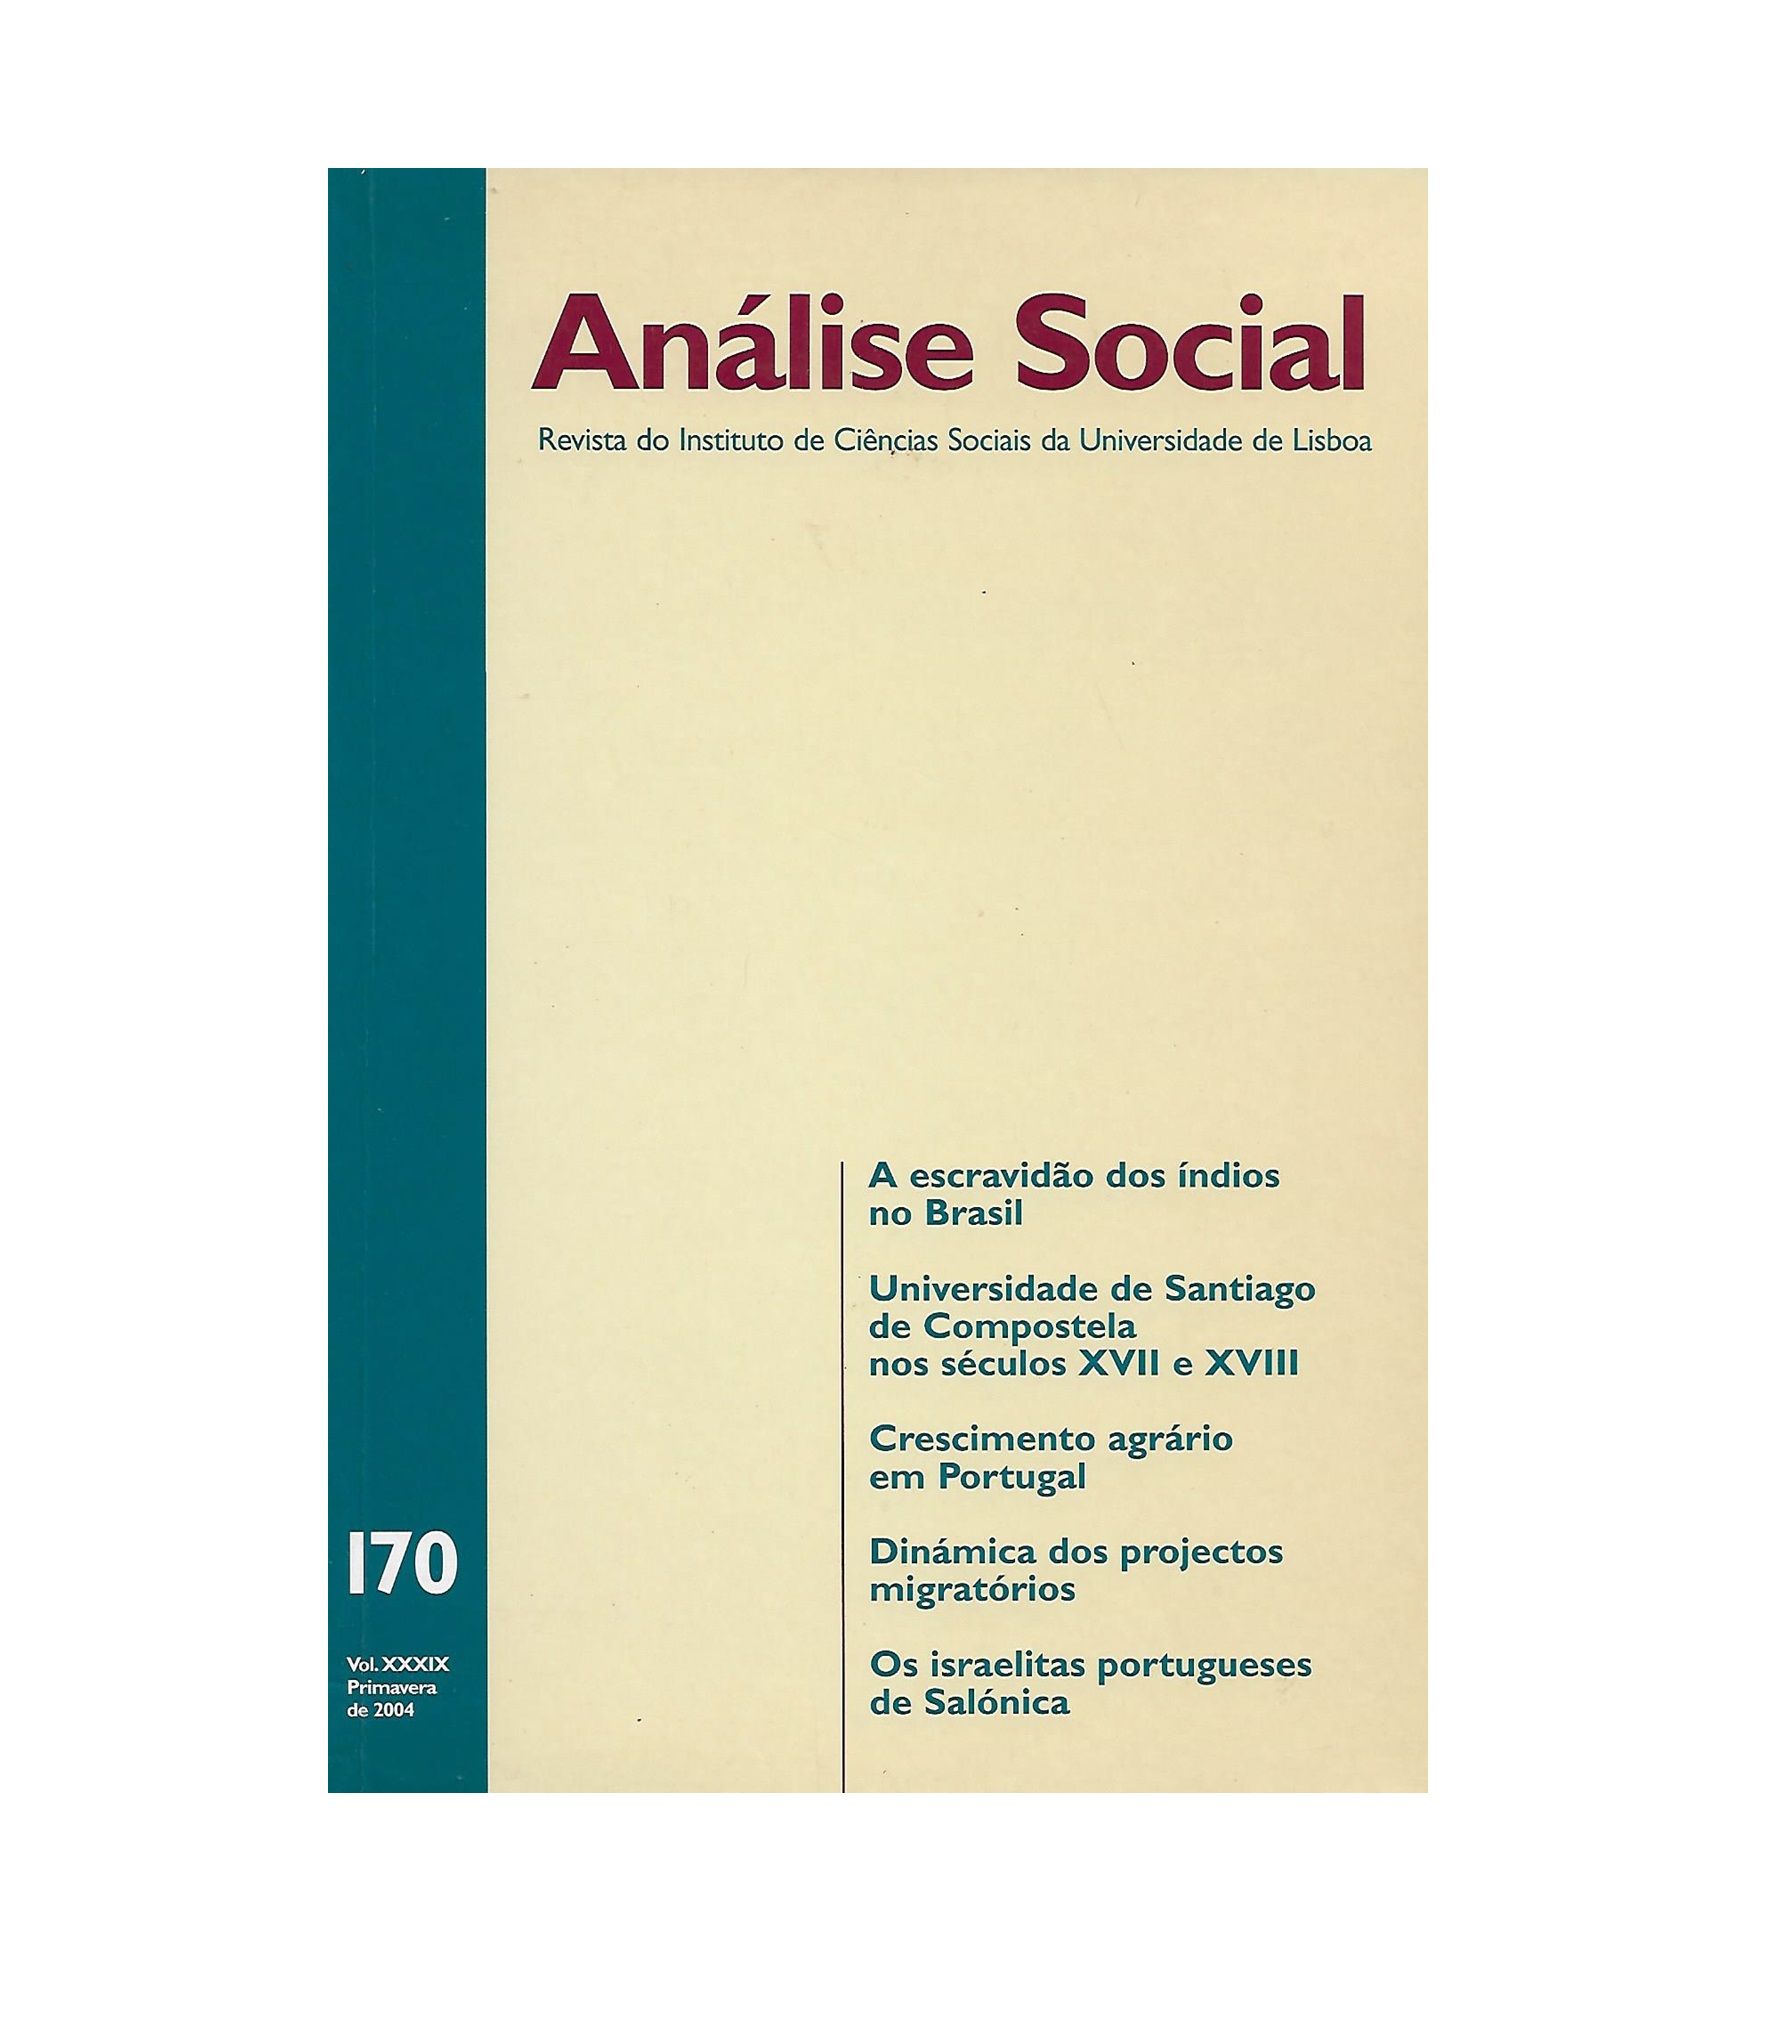 ANÁLISE SOCIAL. Vol. XXXIX